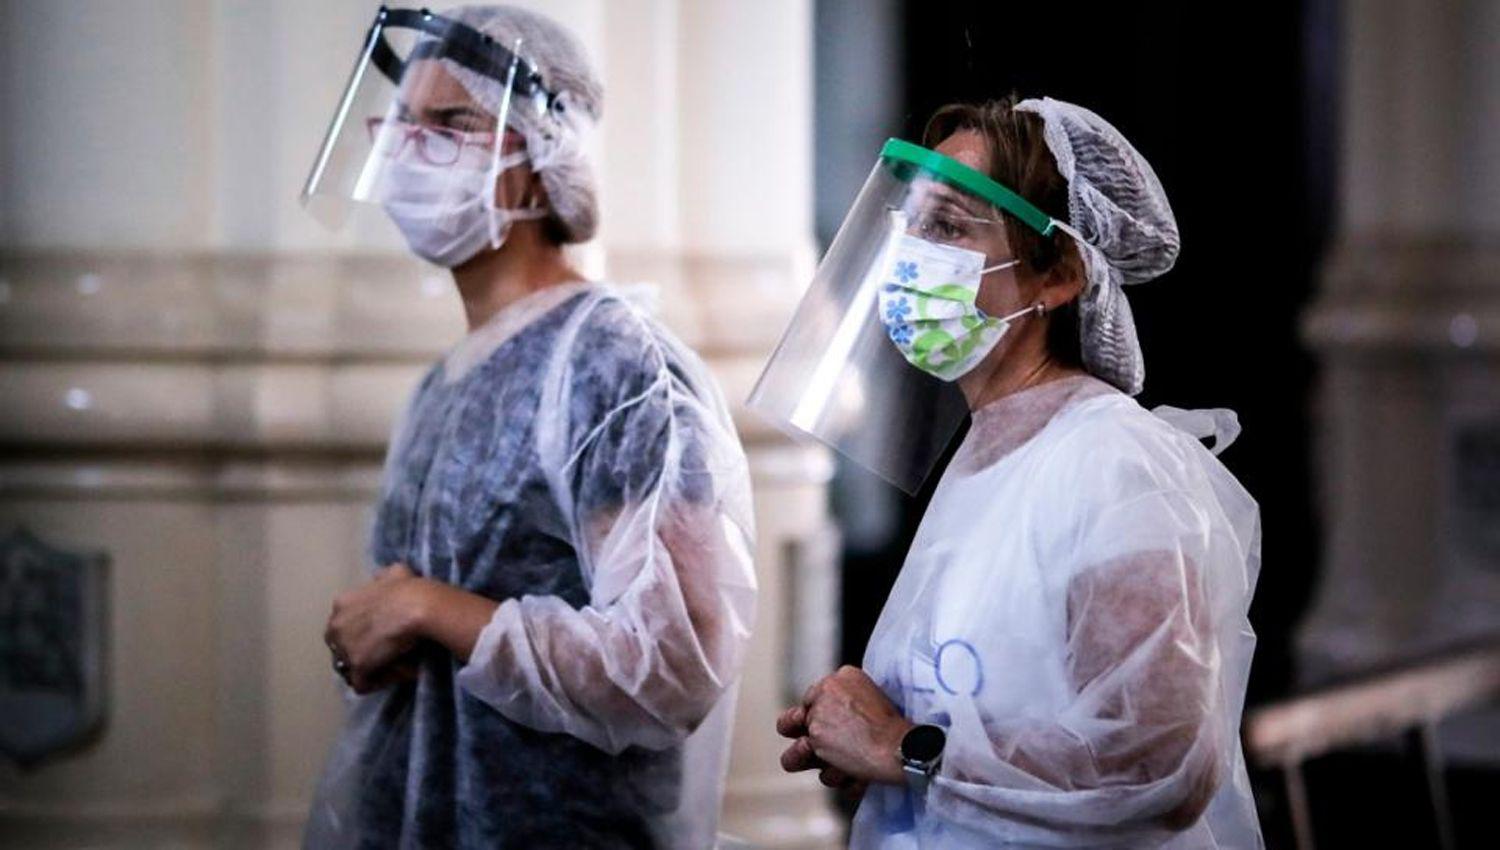 Argentina sumoacute 1226 nuevos contagios en las uacuteltimas 24 horas